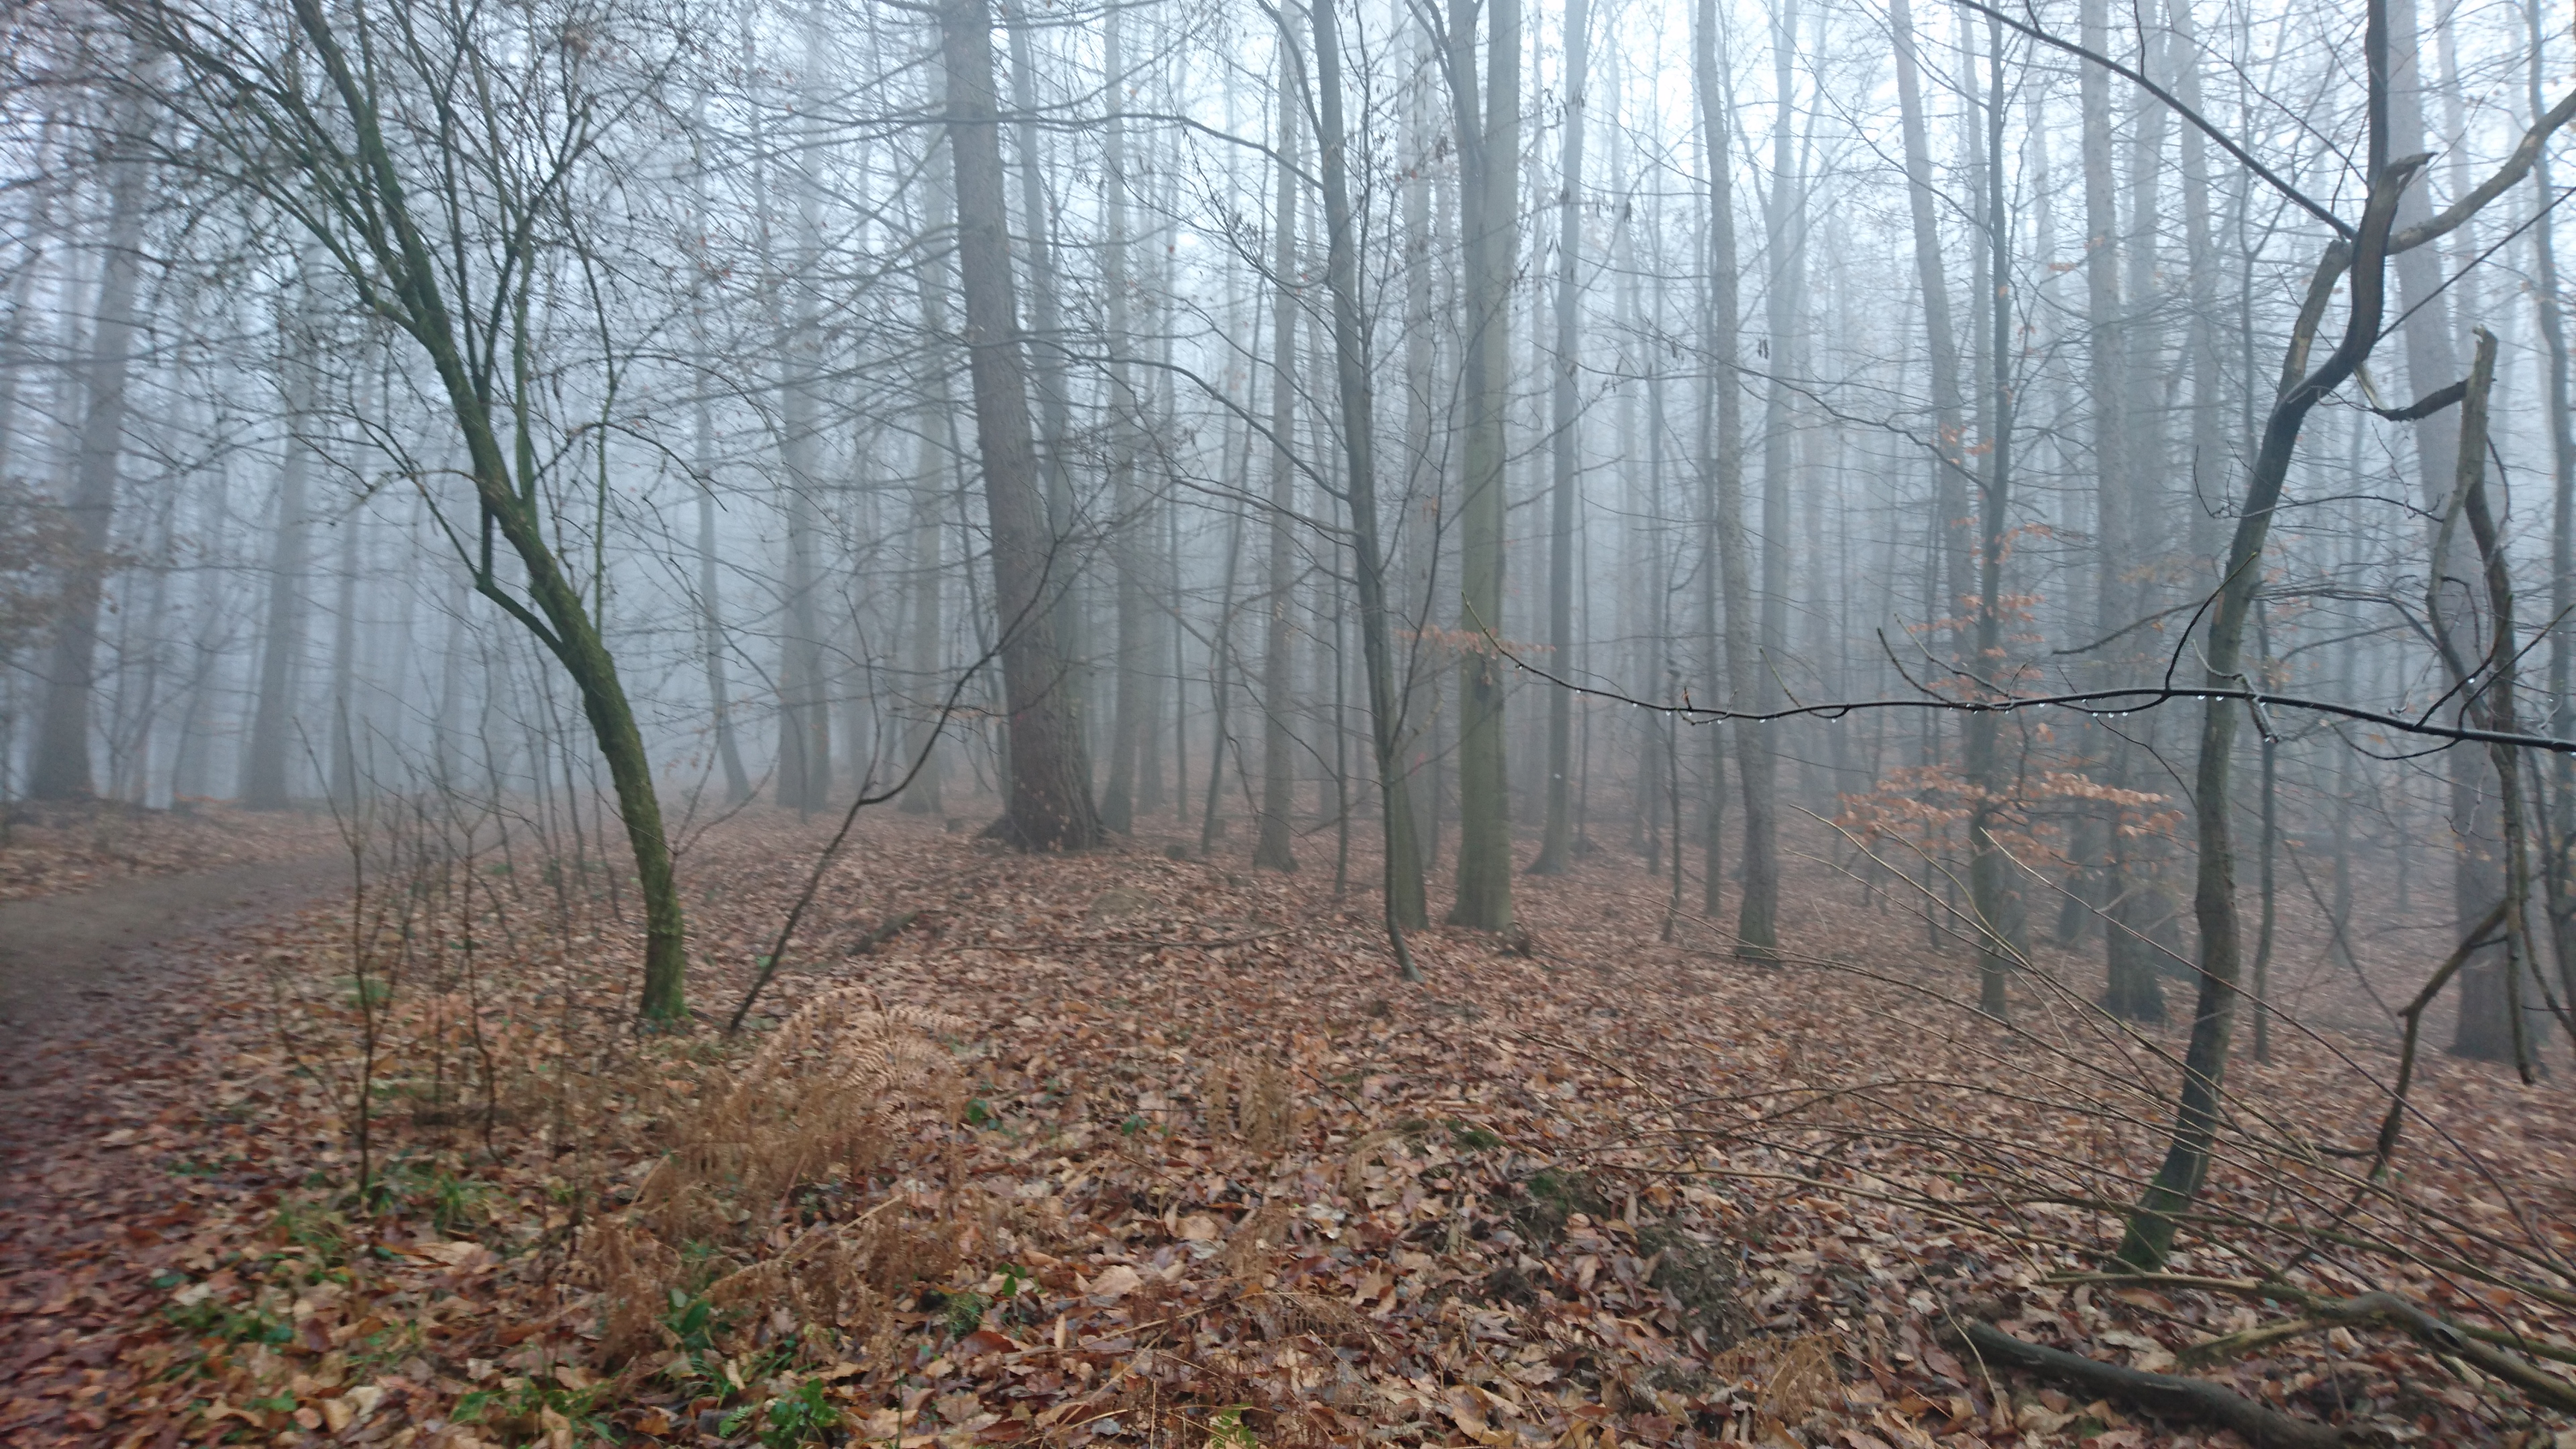 Herbstwald mit laubbedecktem Boden und sanftem Nebel zwischen dunklen, kahlen Baumstämmen